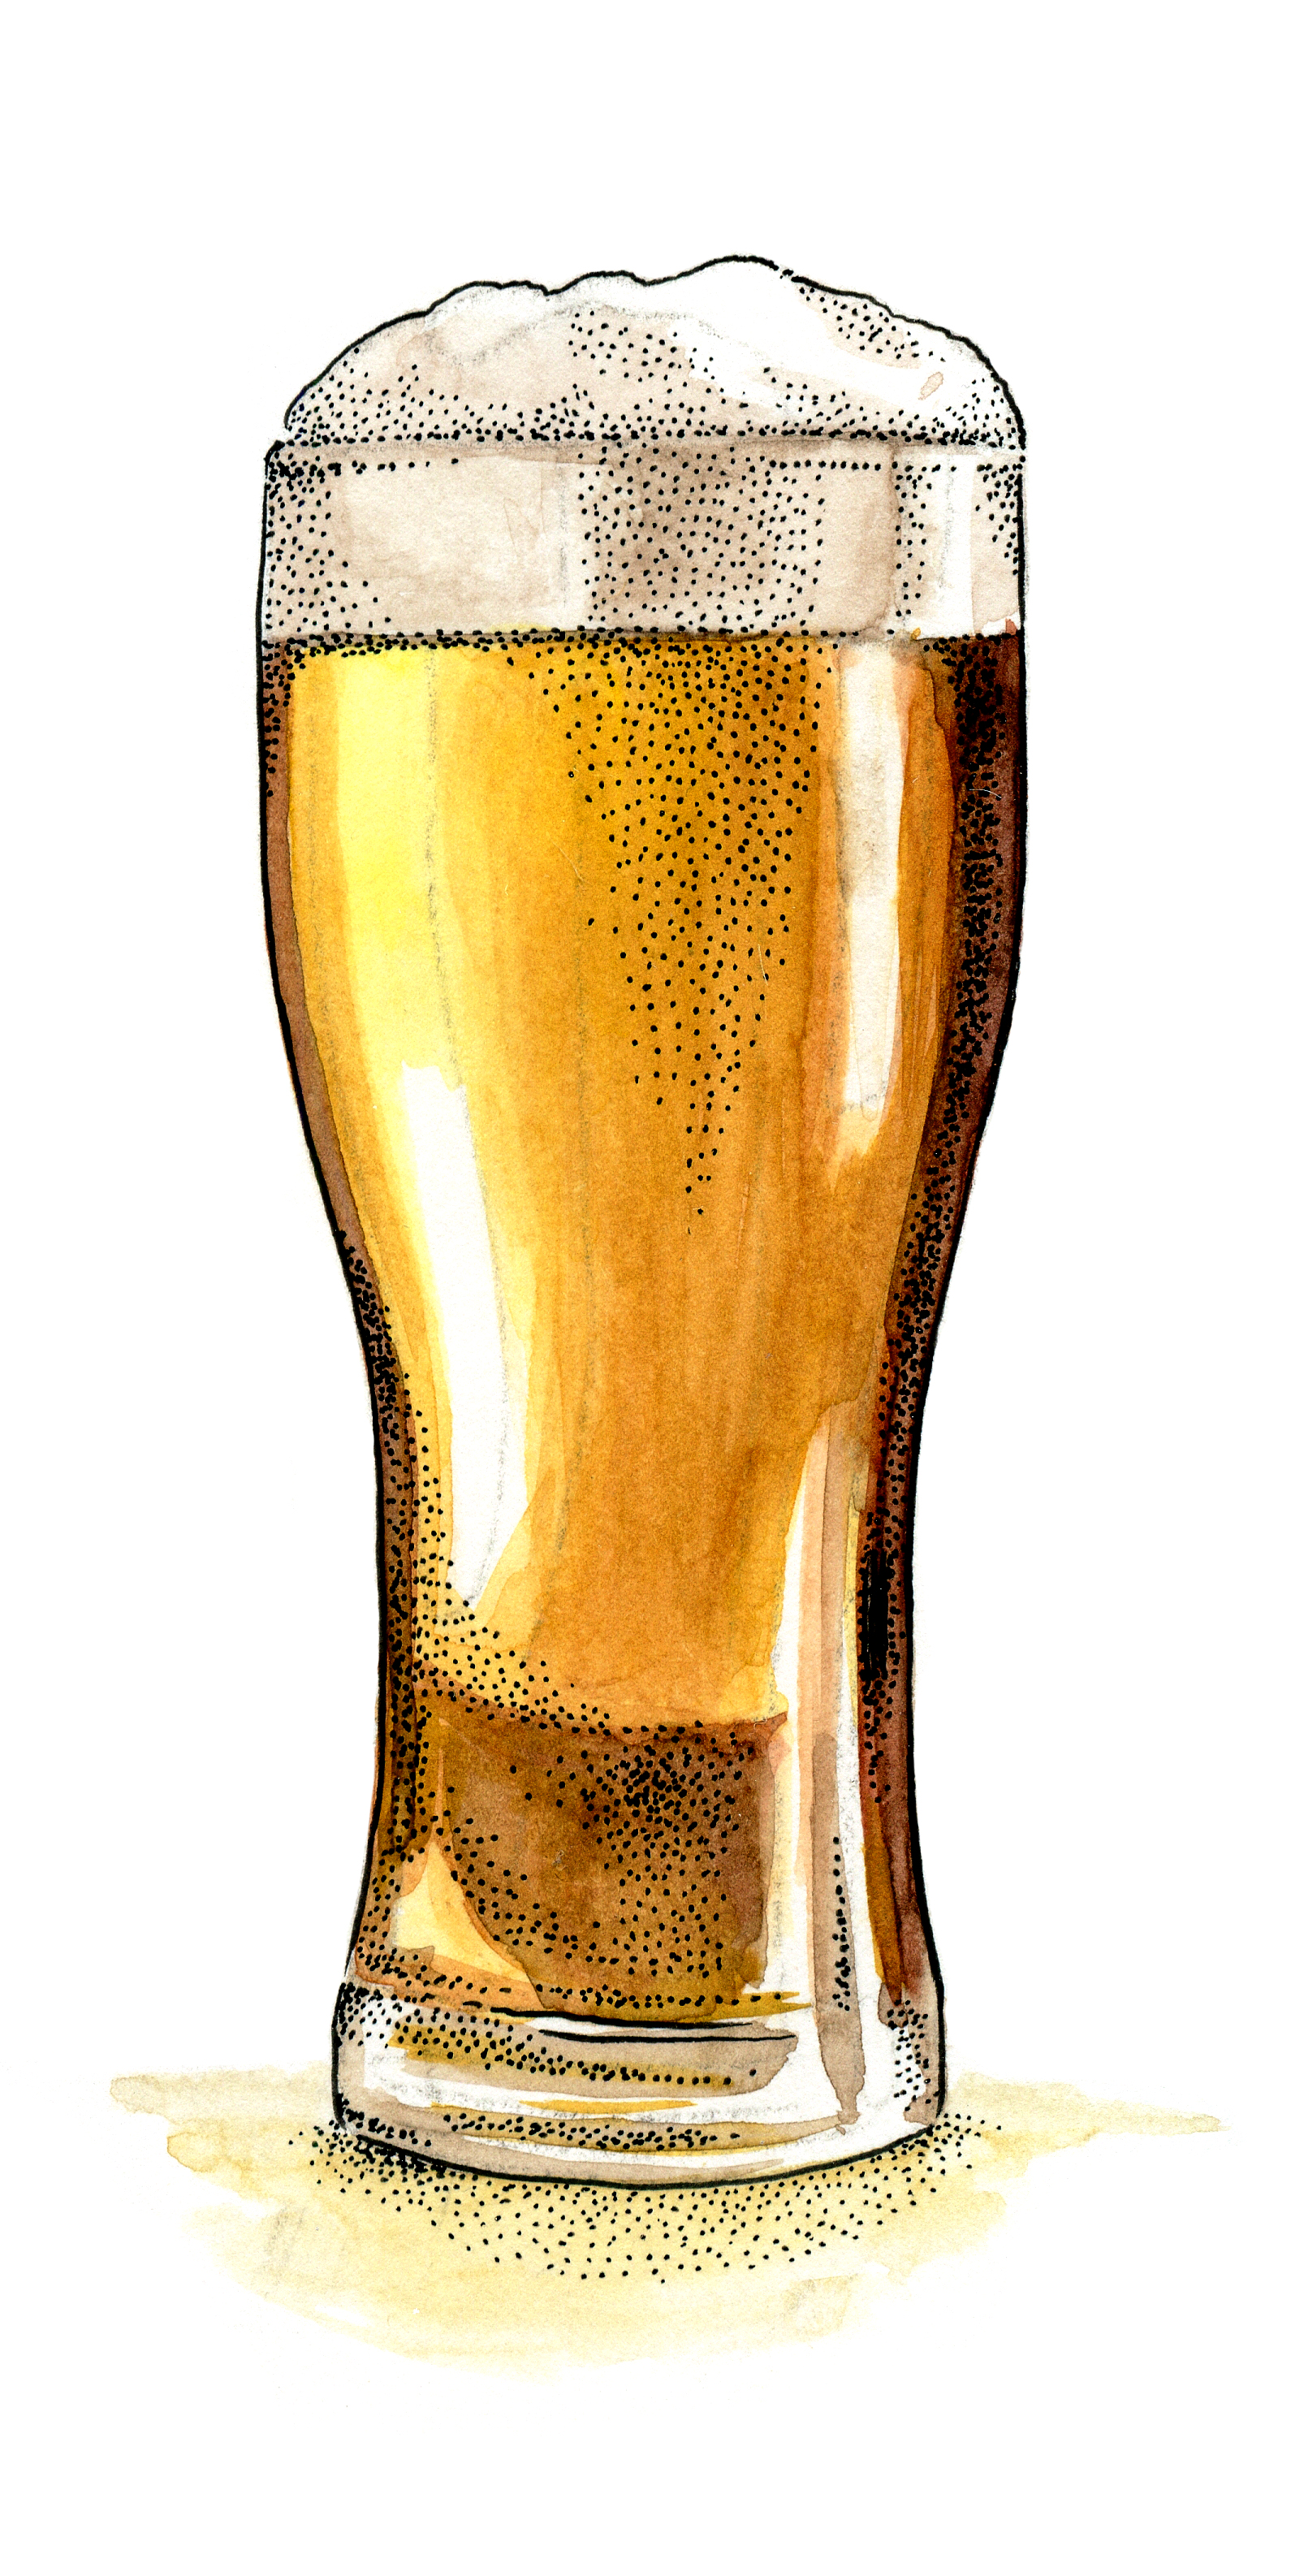 Beer Glass088.jpg